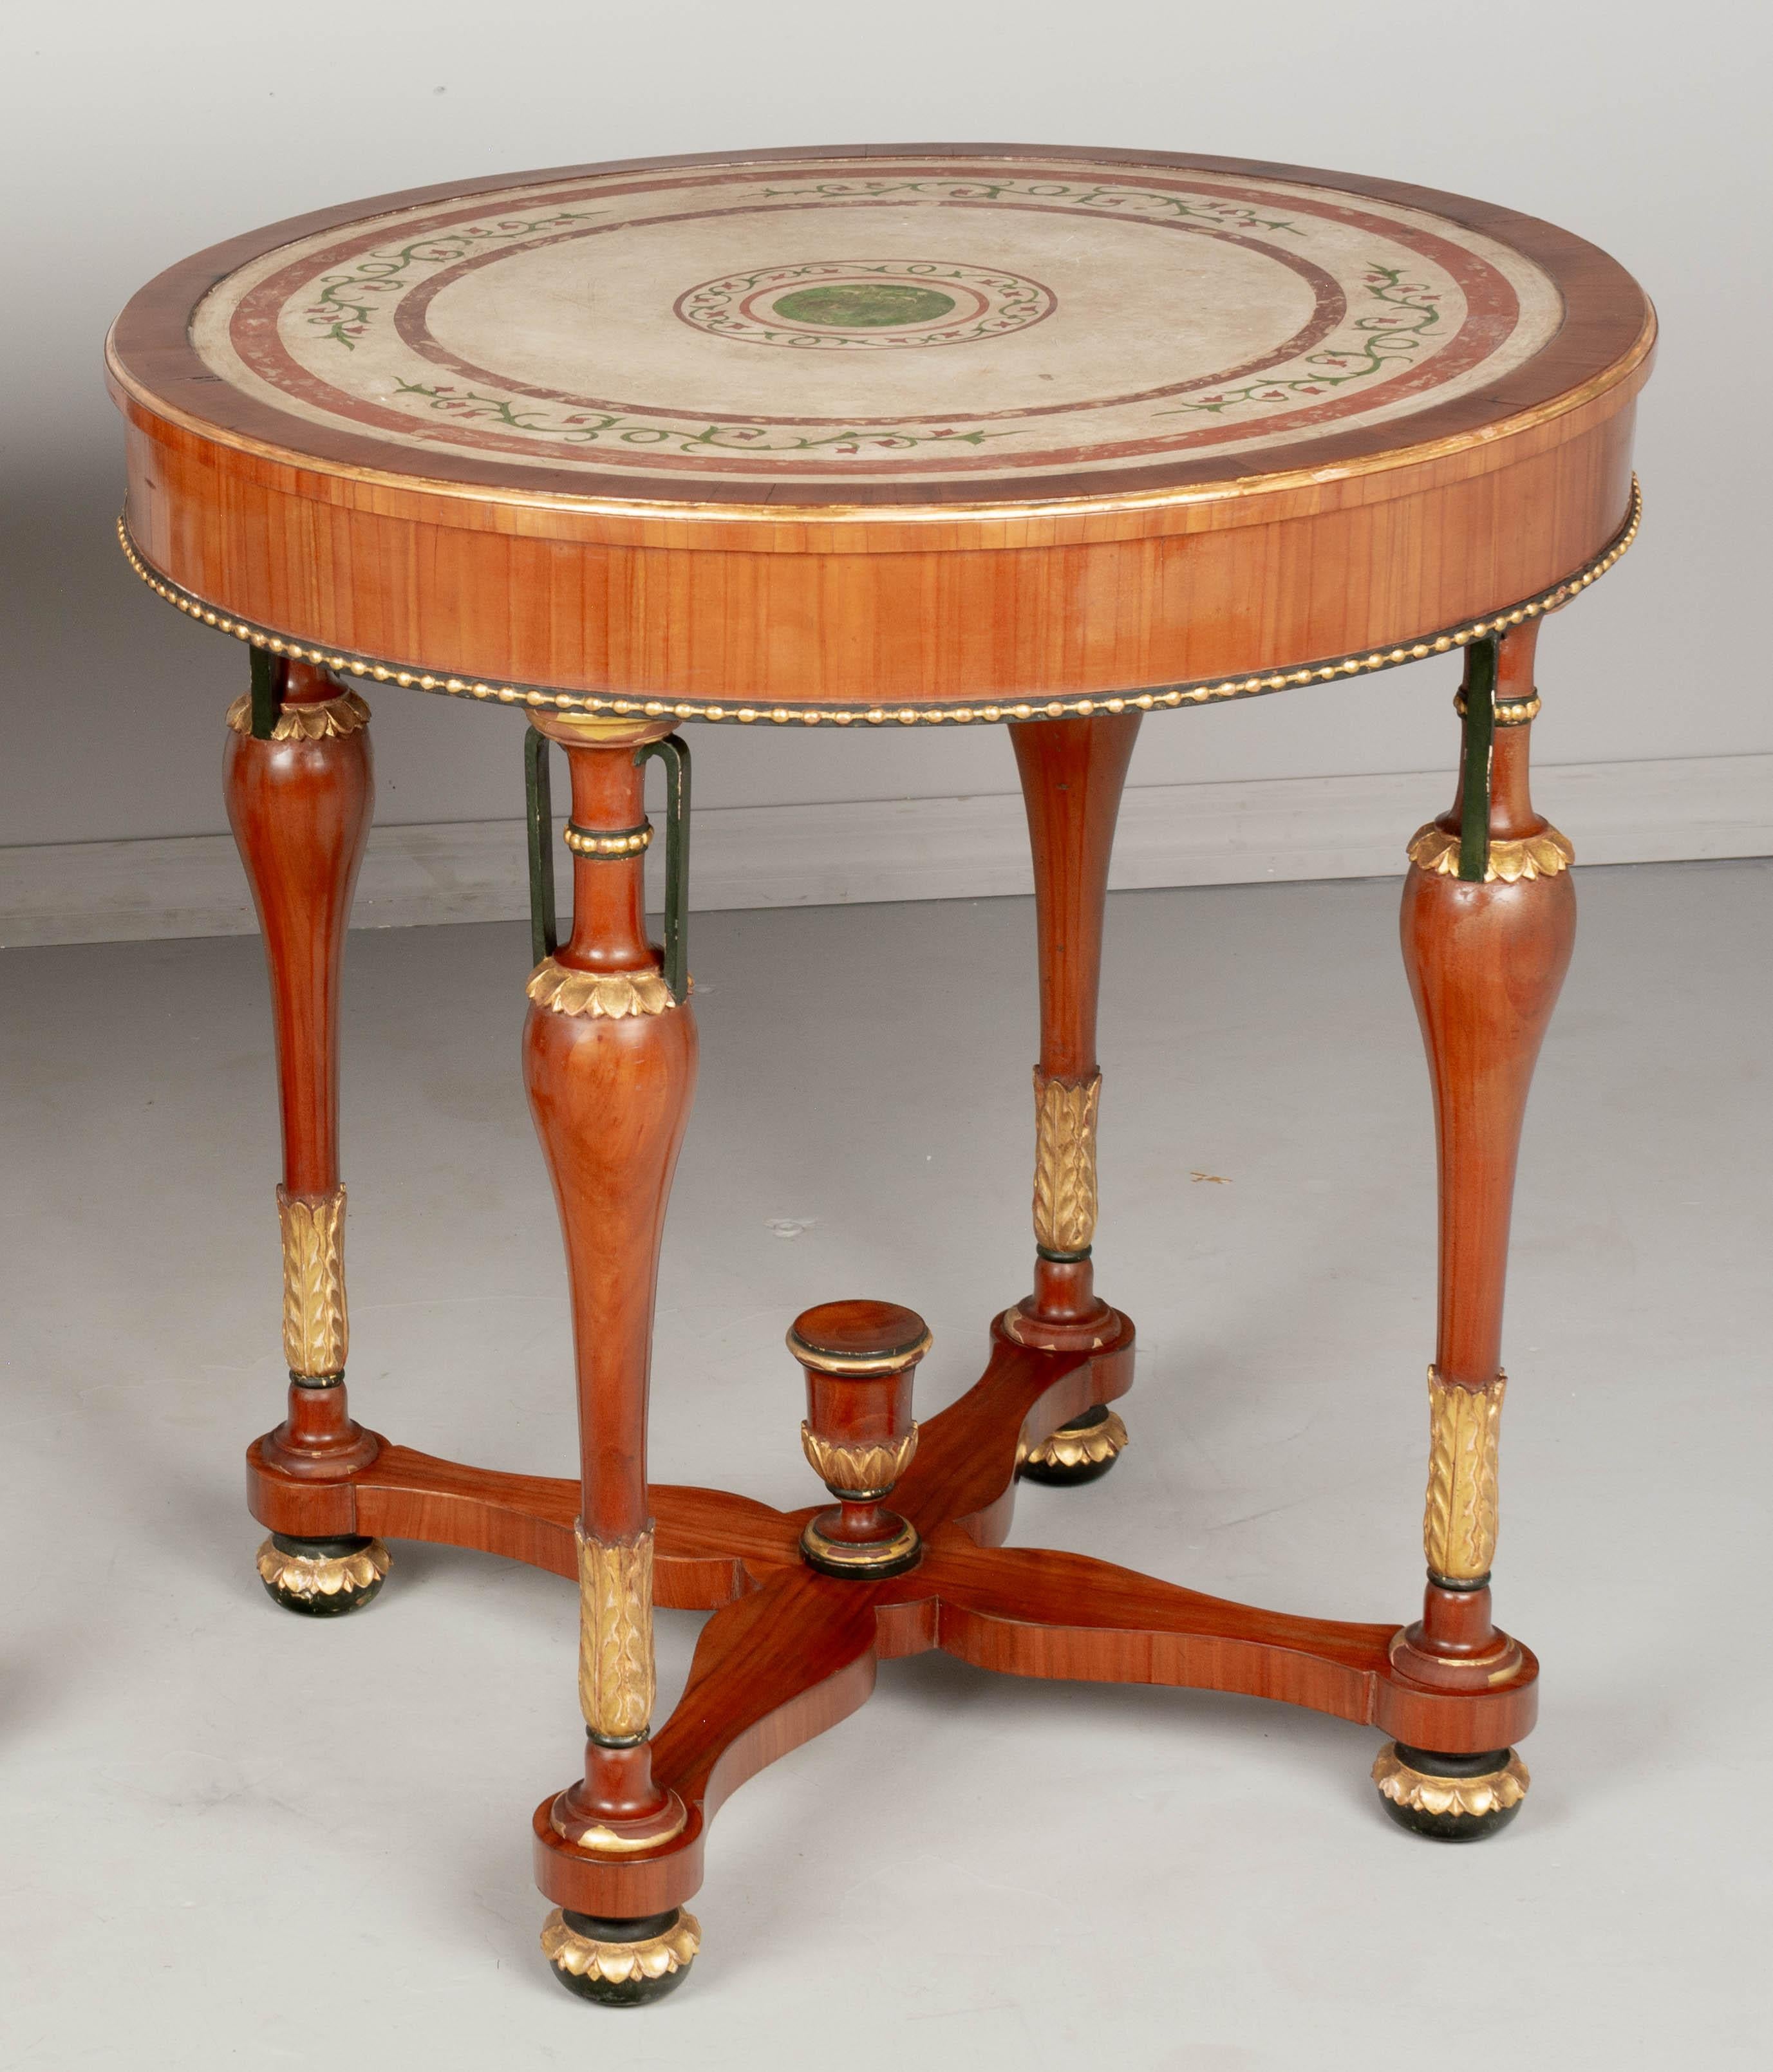 Ein runder italienischer Tisch im neoklassischen Stil aus massivem und furniertem Kirschbaumholz. Die Platte ist aus Scagliola, einer handbemalten Gipstechnik, die Intarsien in Marmor ähnelt. Elegante, gedrechselte Beine mit Urnenformen und